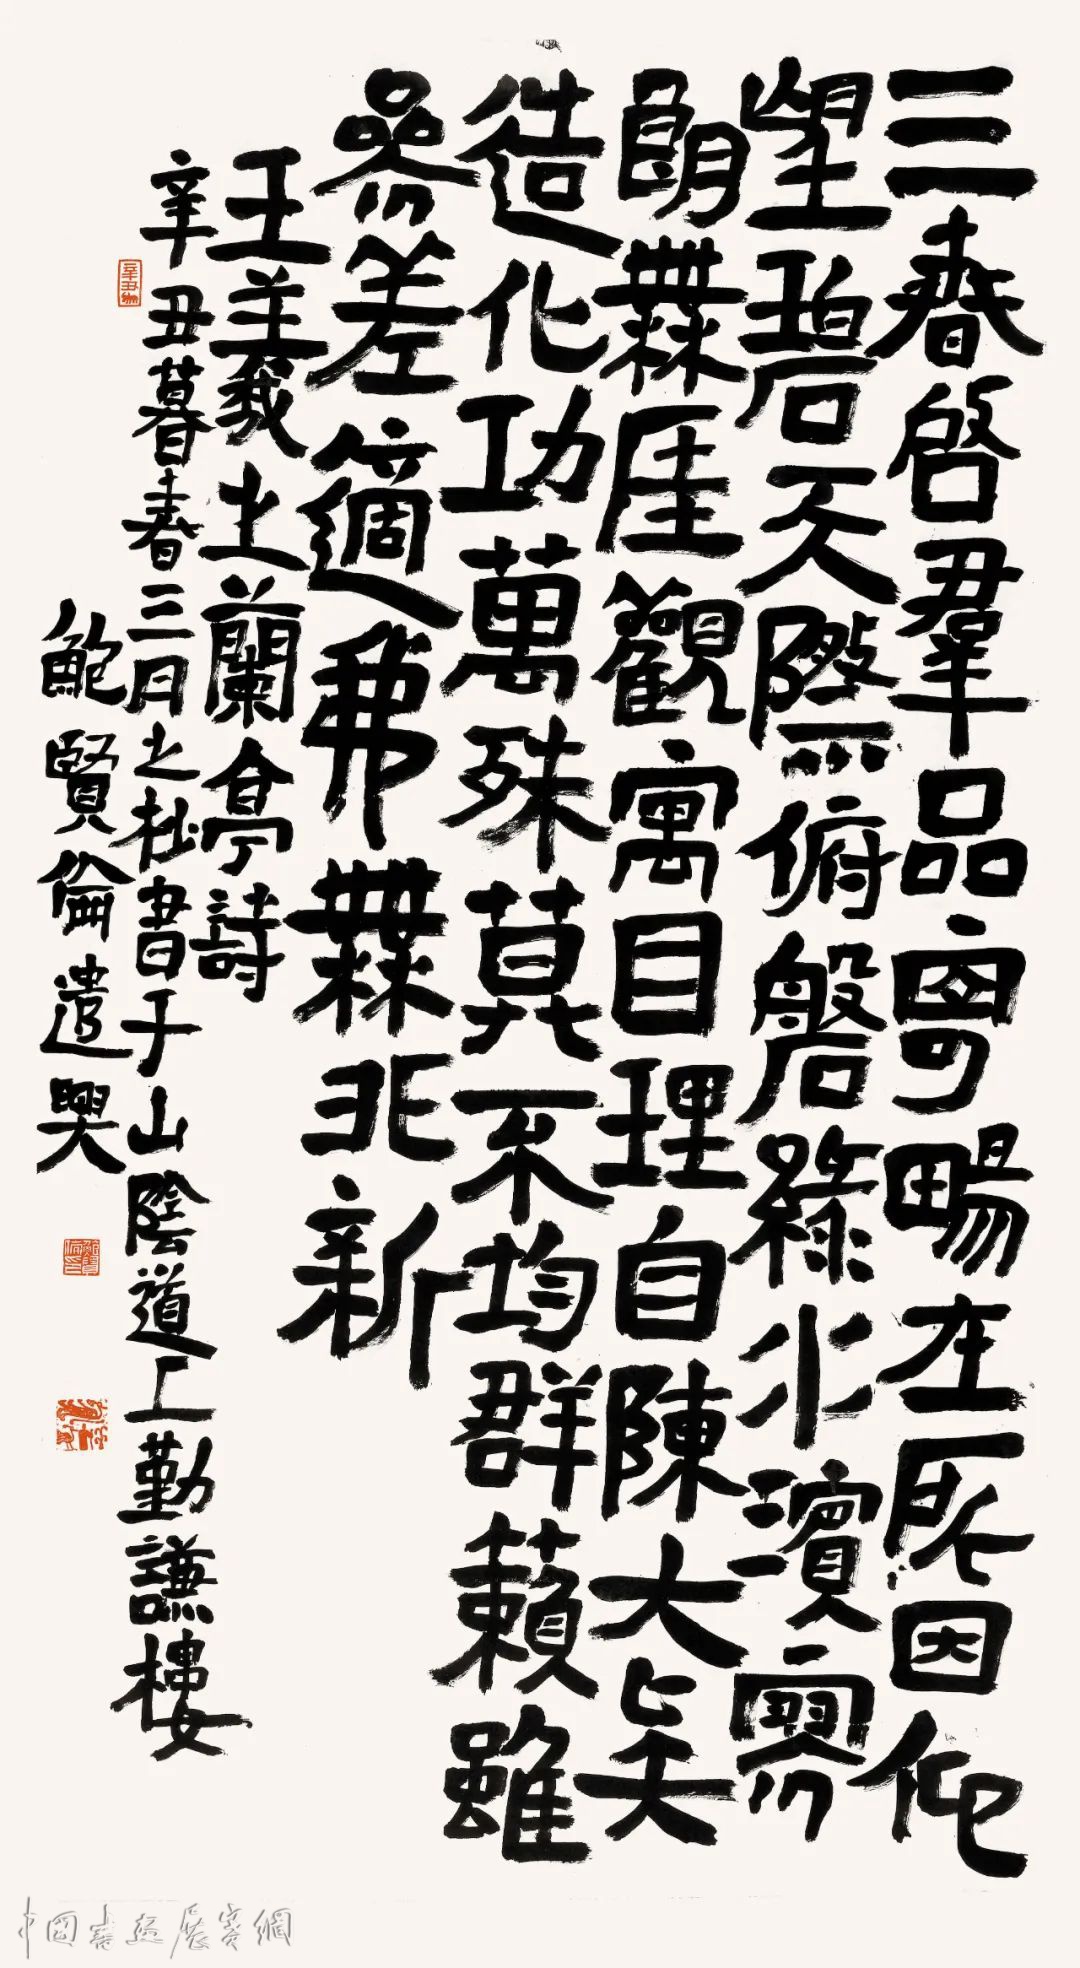 琅琊寻古·鲍贤伦书法展将在山东临沂开幕！